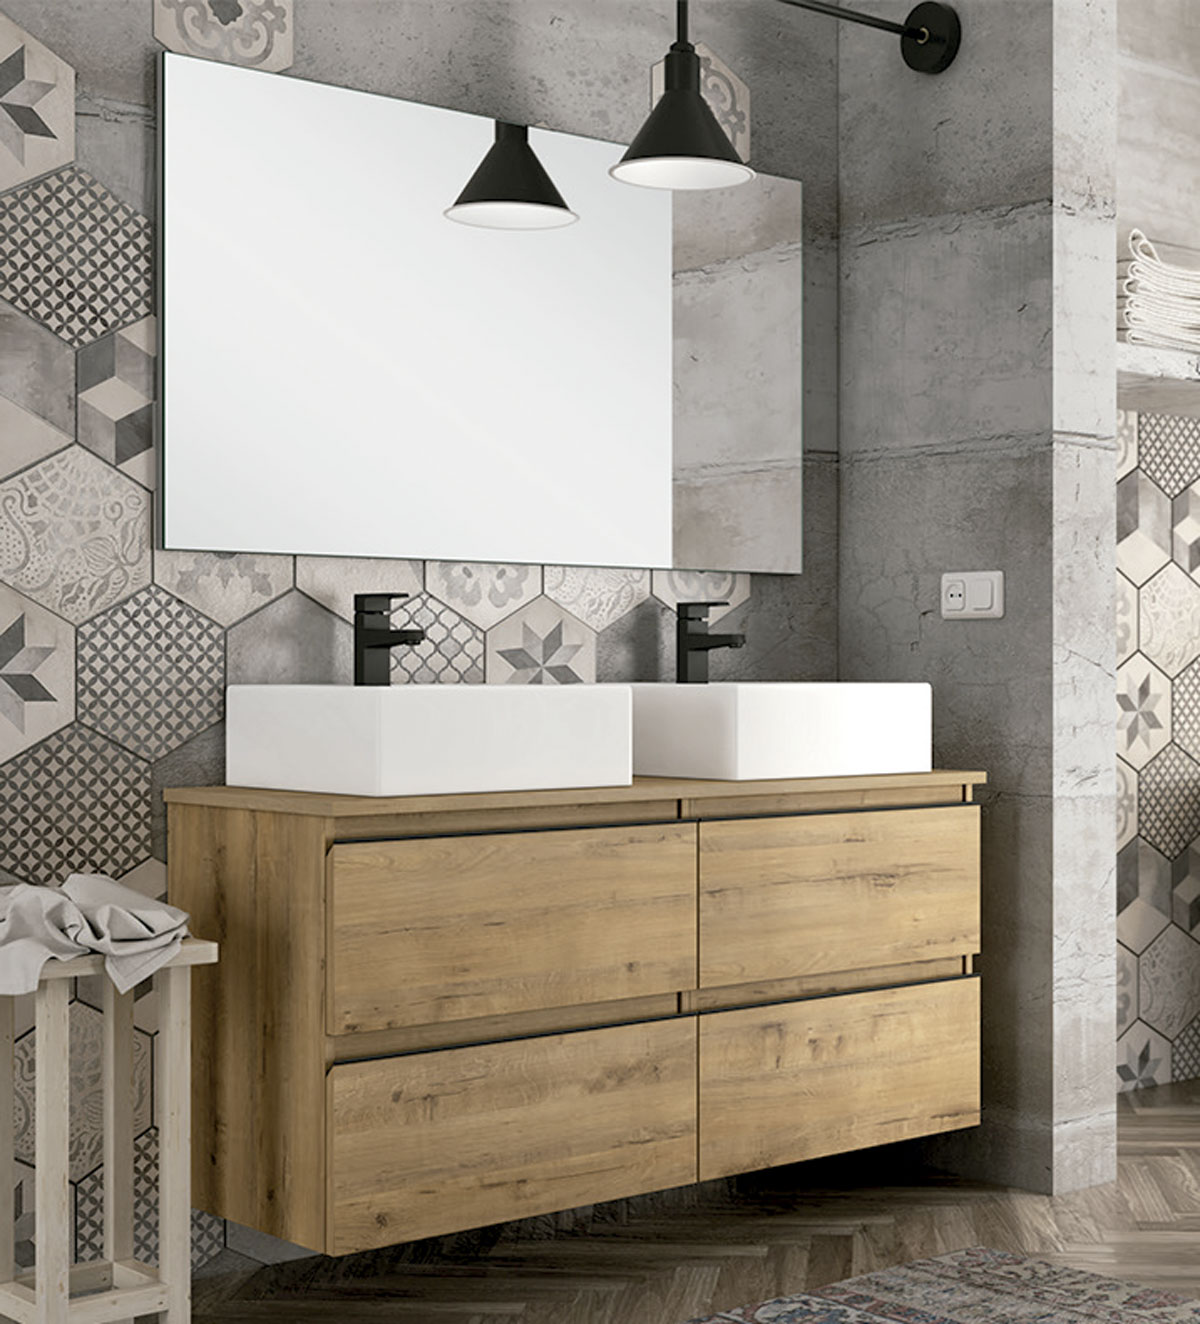 mueble de baño elevado de color marrón con espejo